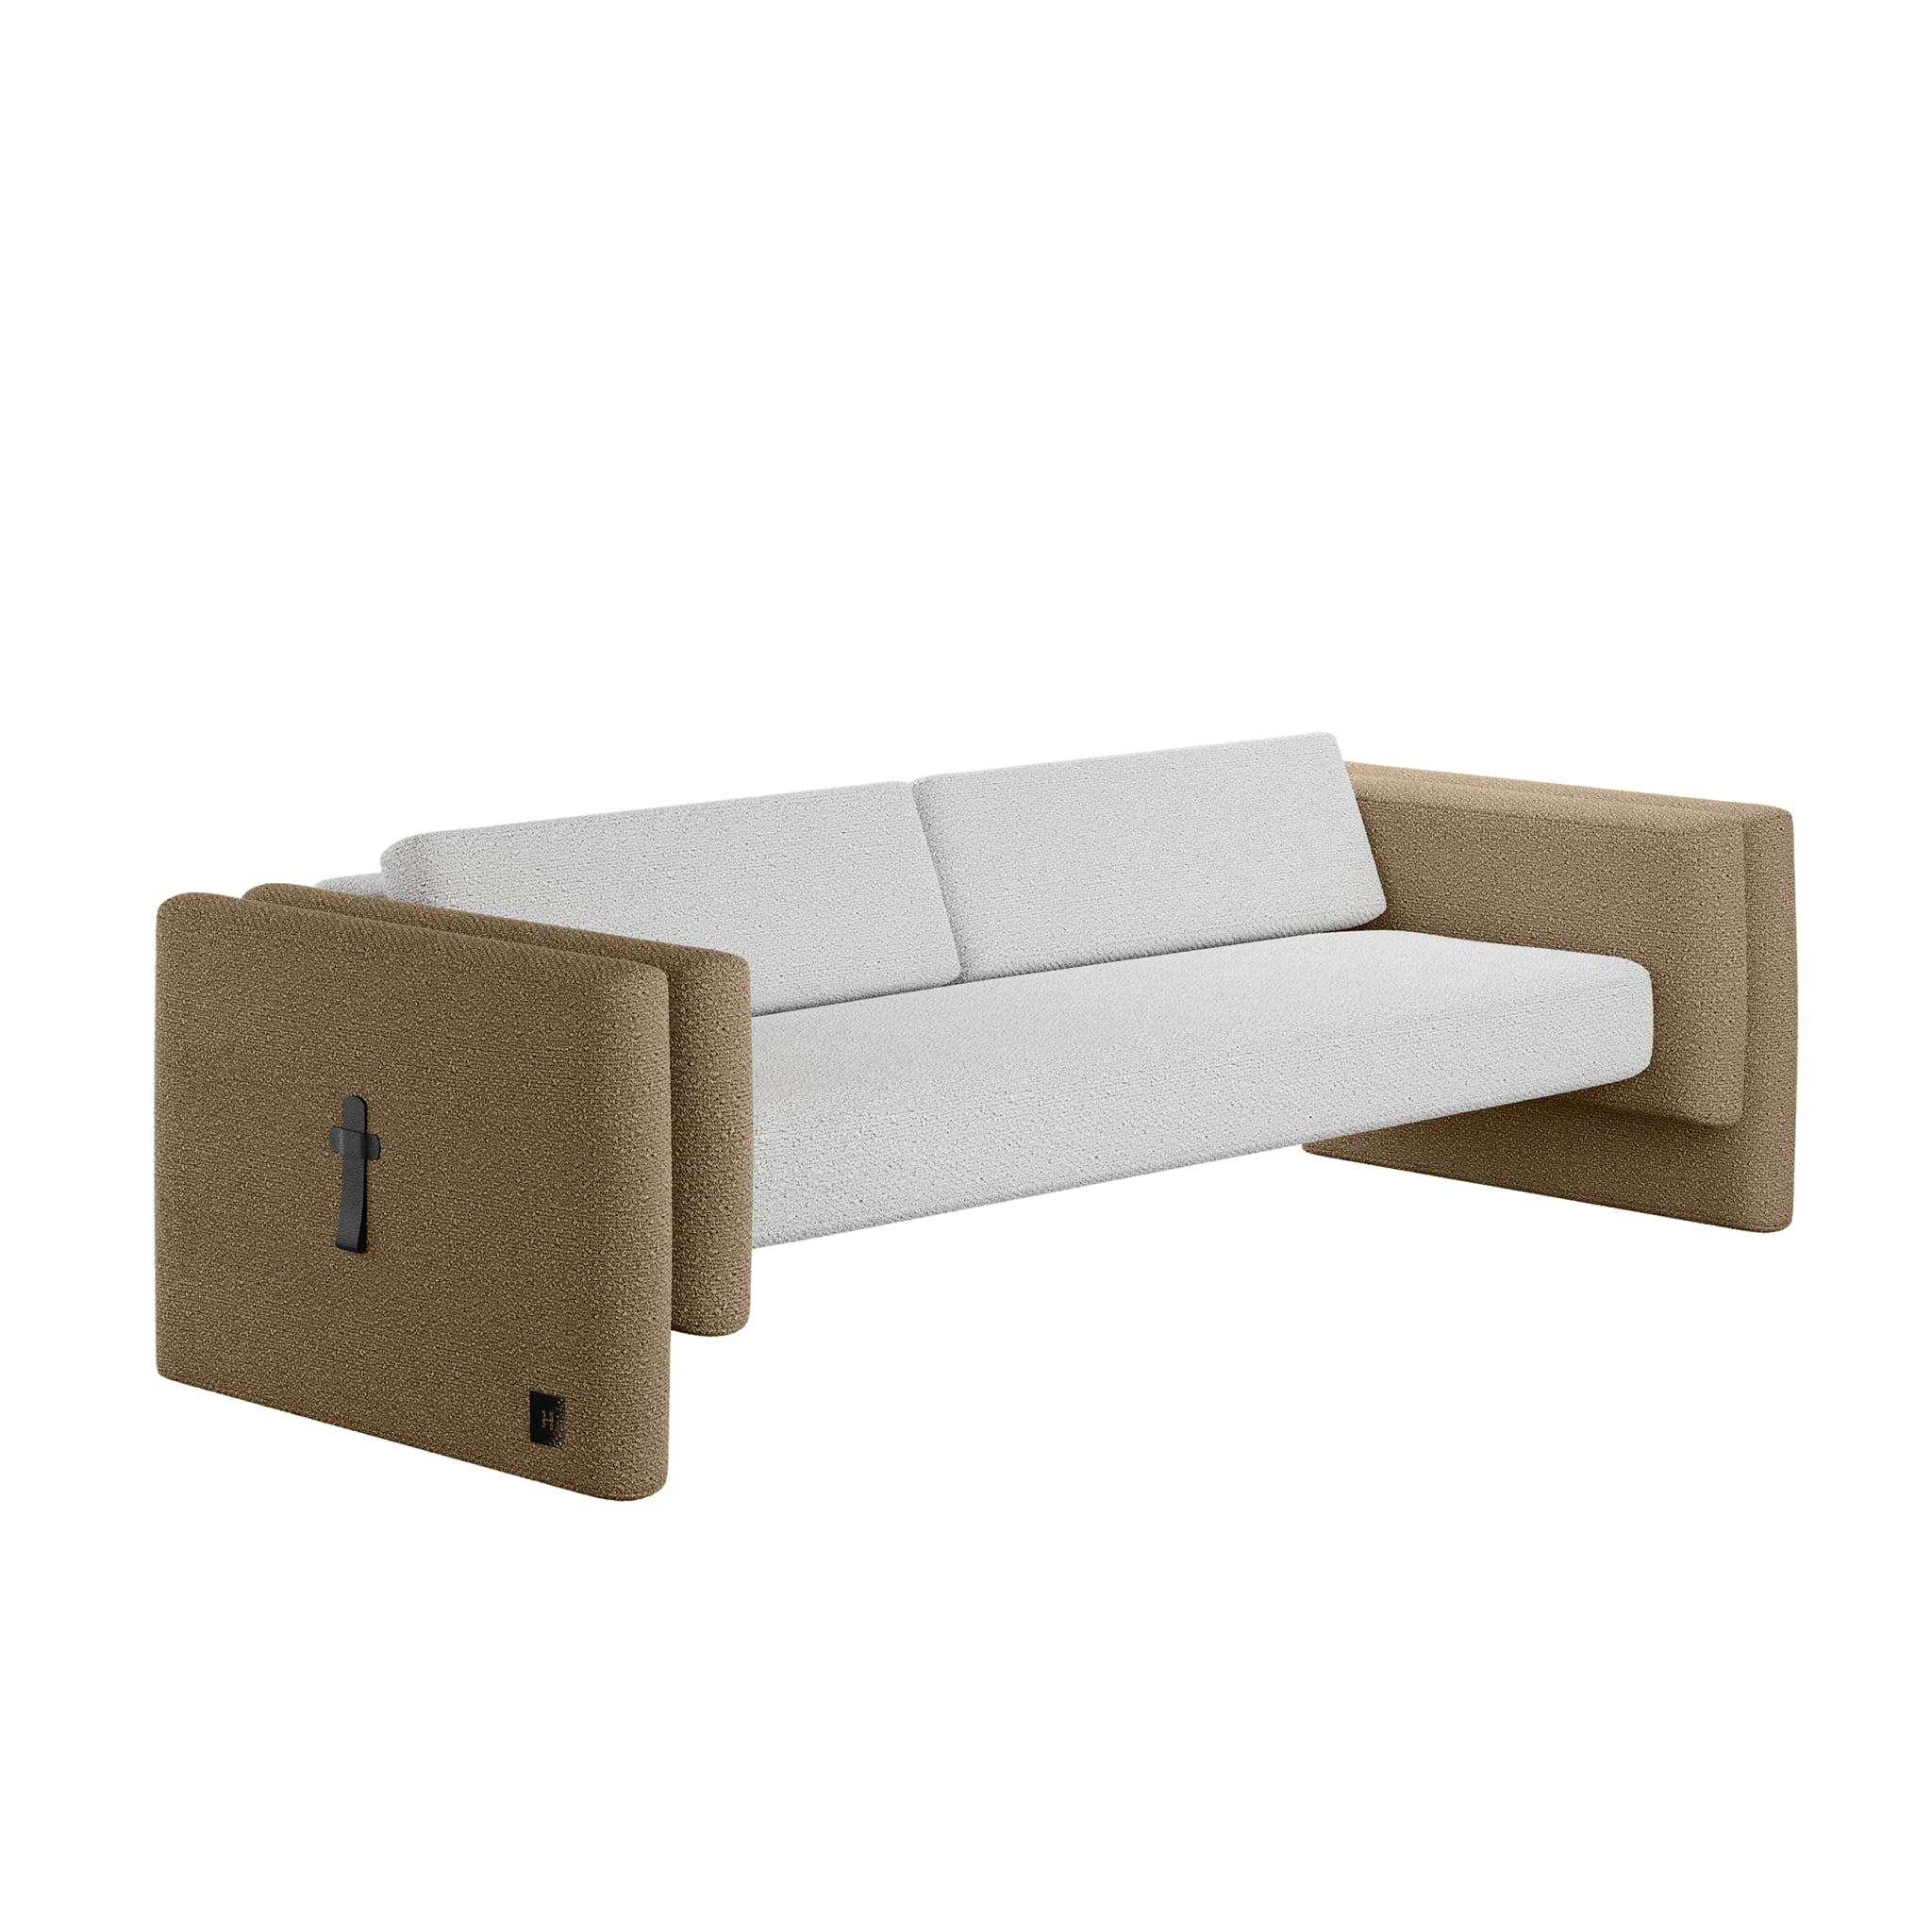 Lisola Sofa Khaki & White ist ein modernes Sitzmöbel für den Außenbereich. Ein einzigartiges Sofa für den Außenbereich, das durch das raffinierte Design und die feinen Details zu einem authentischen modernen Designstück für einen zeitgenössischen